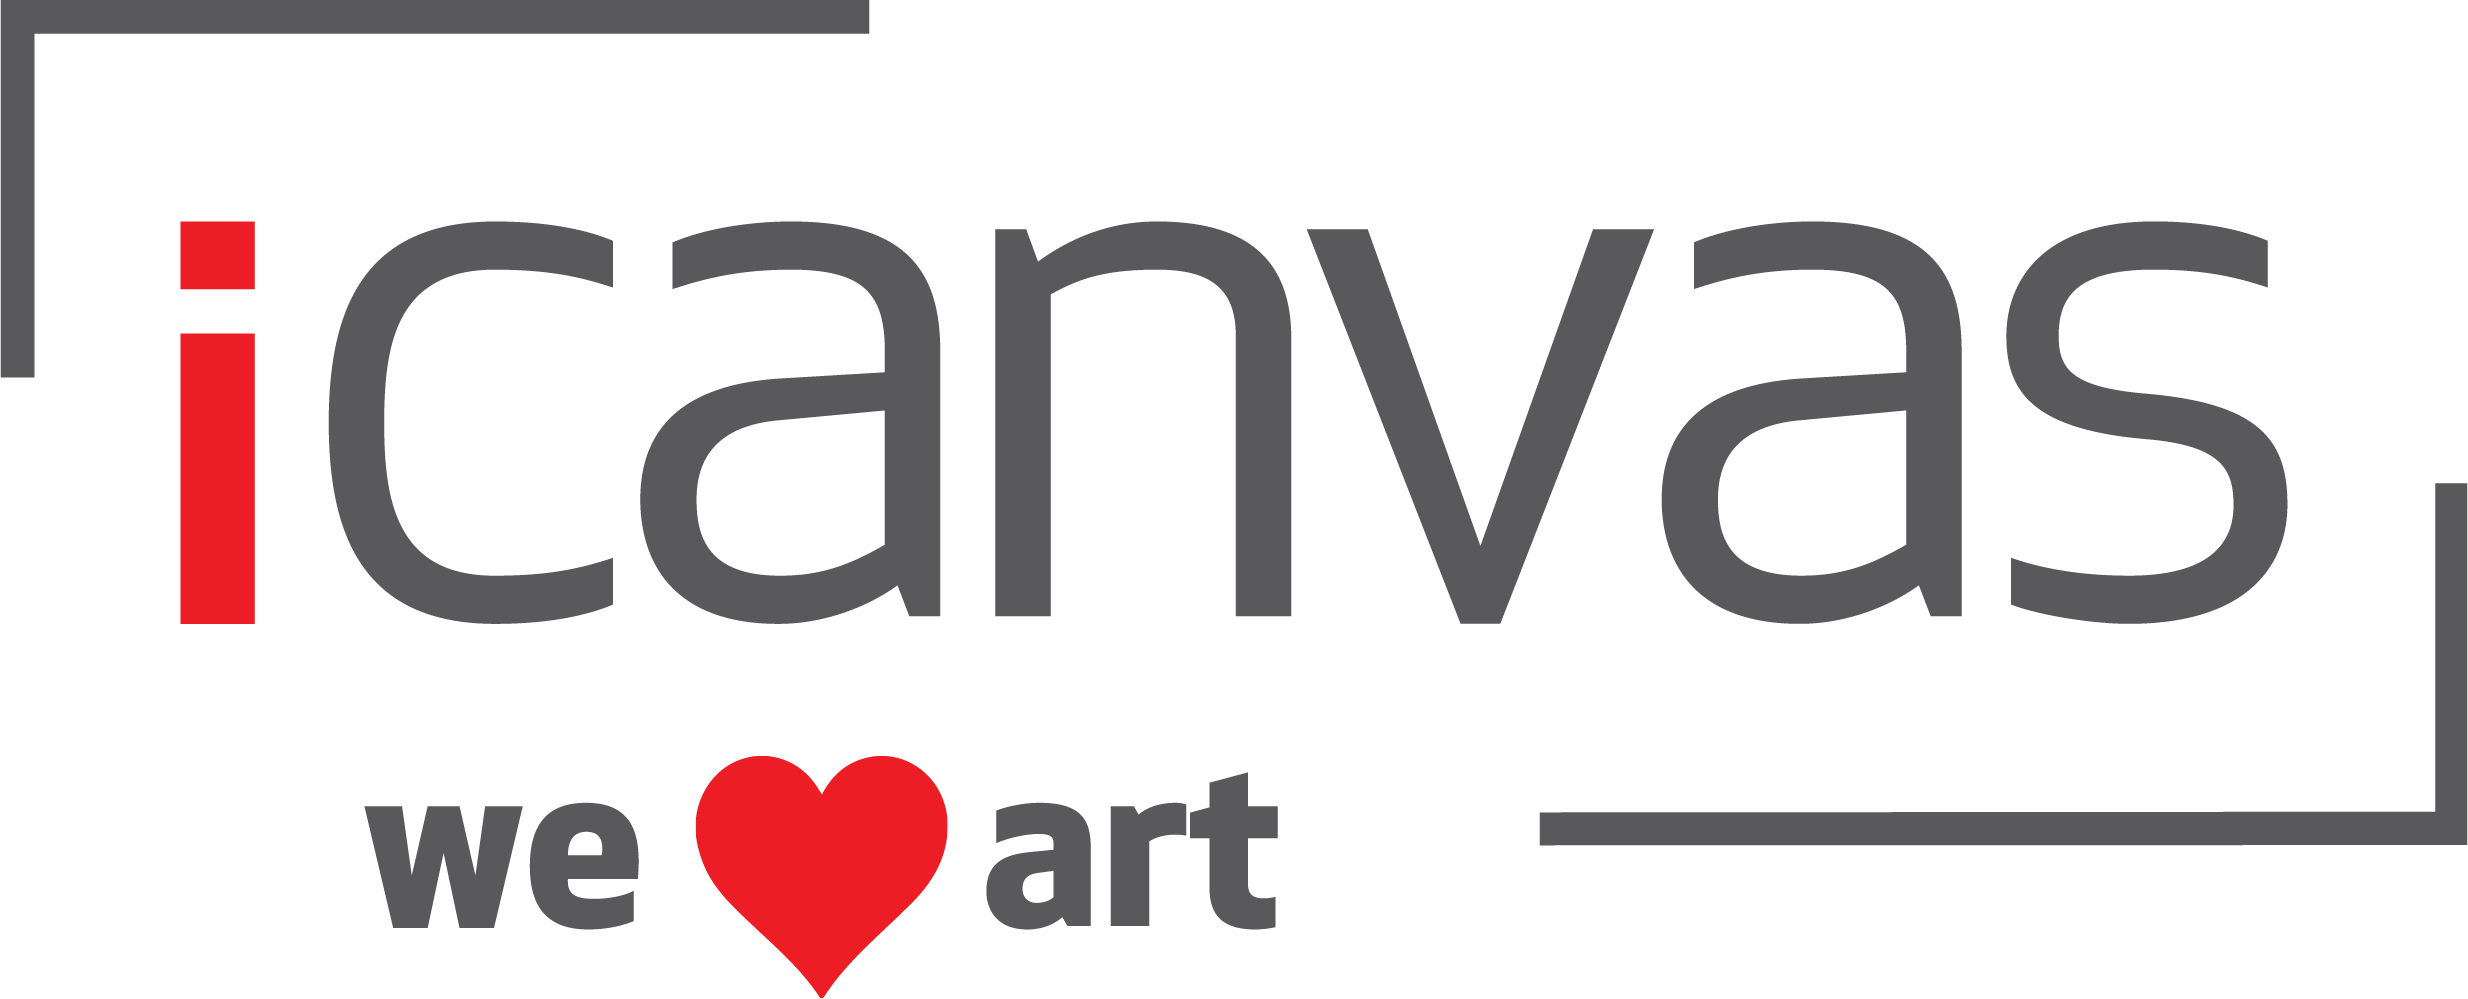 iCanvas Logo